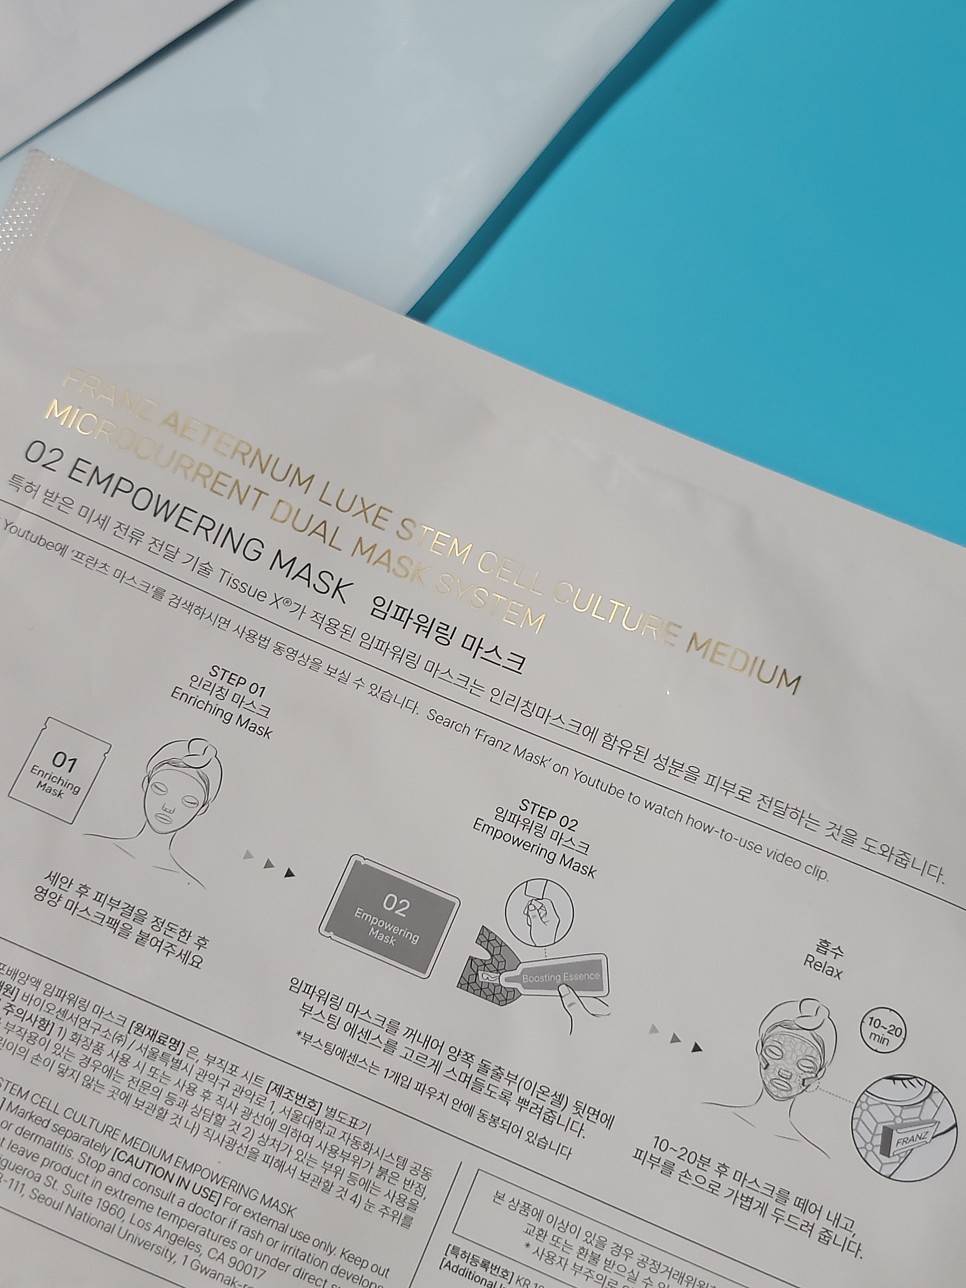 CJ온스타일 홈쇼핑 프란츠 미세전류팩 신제품 출시 - 운동피부관리